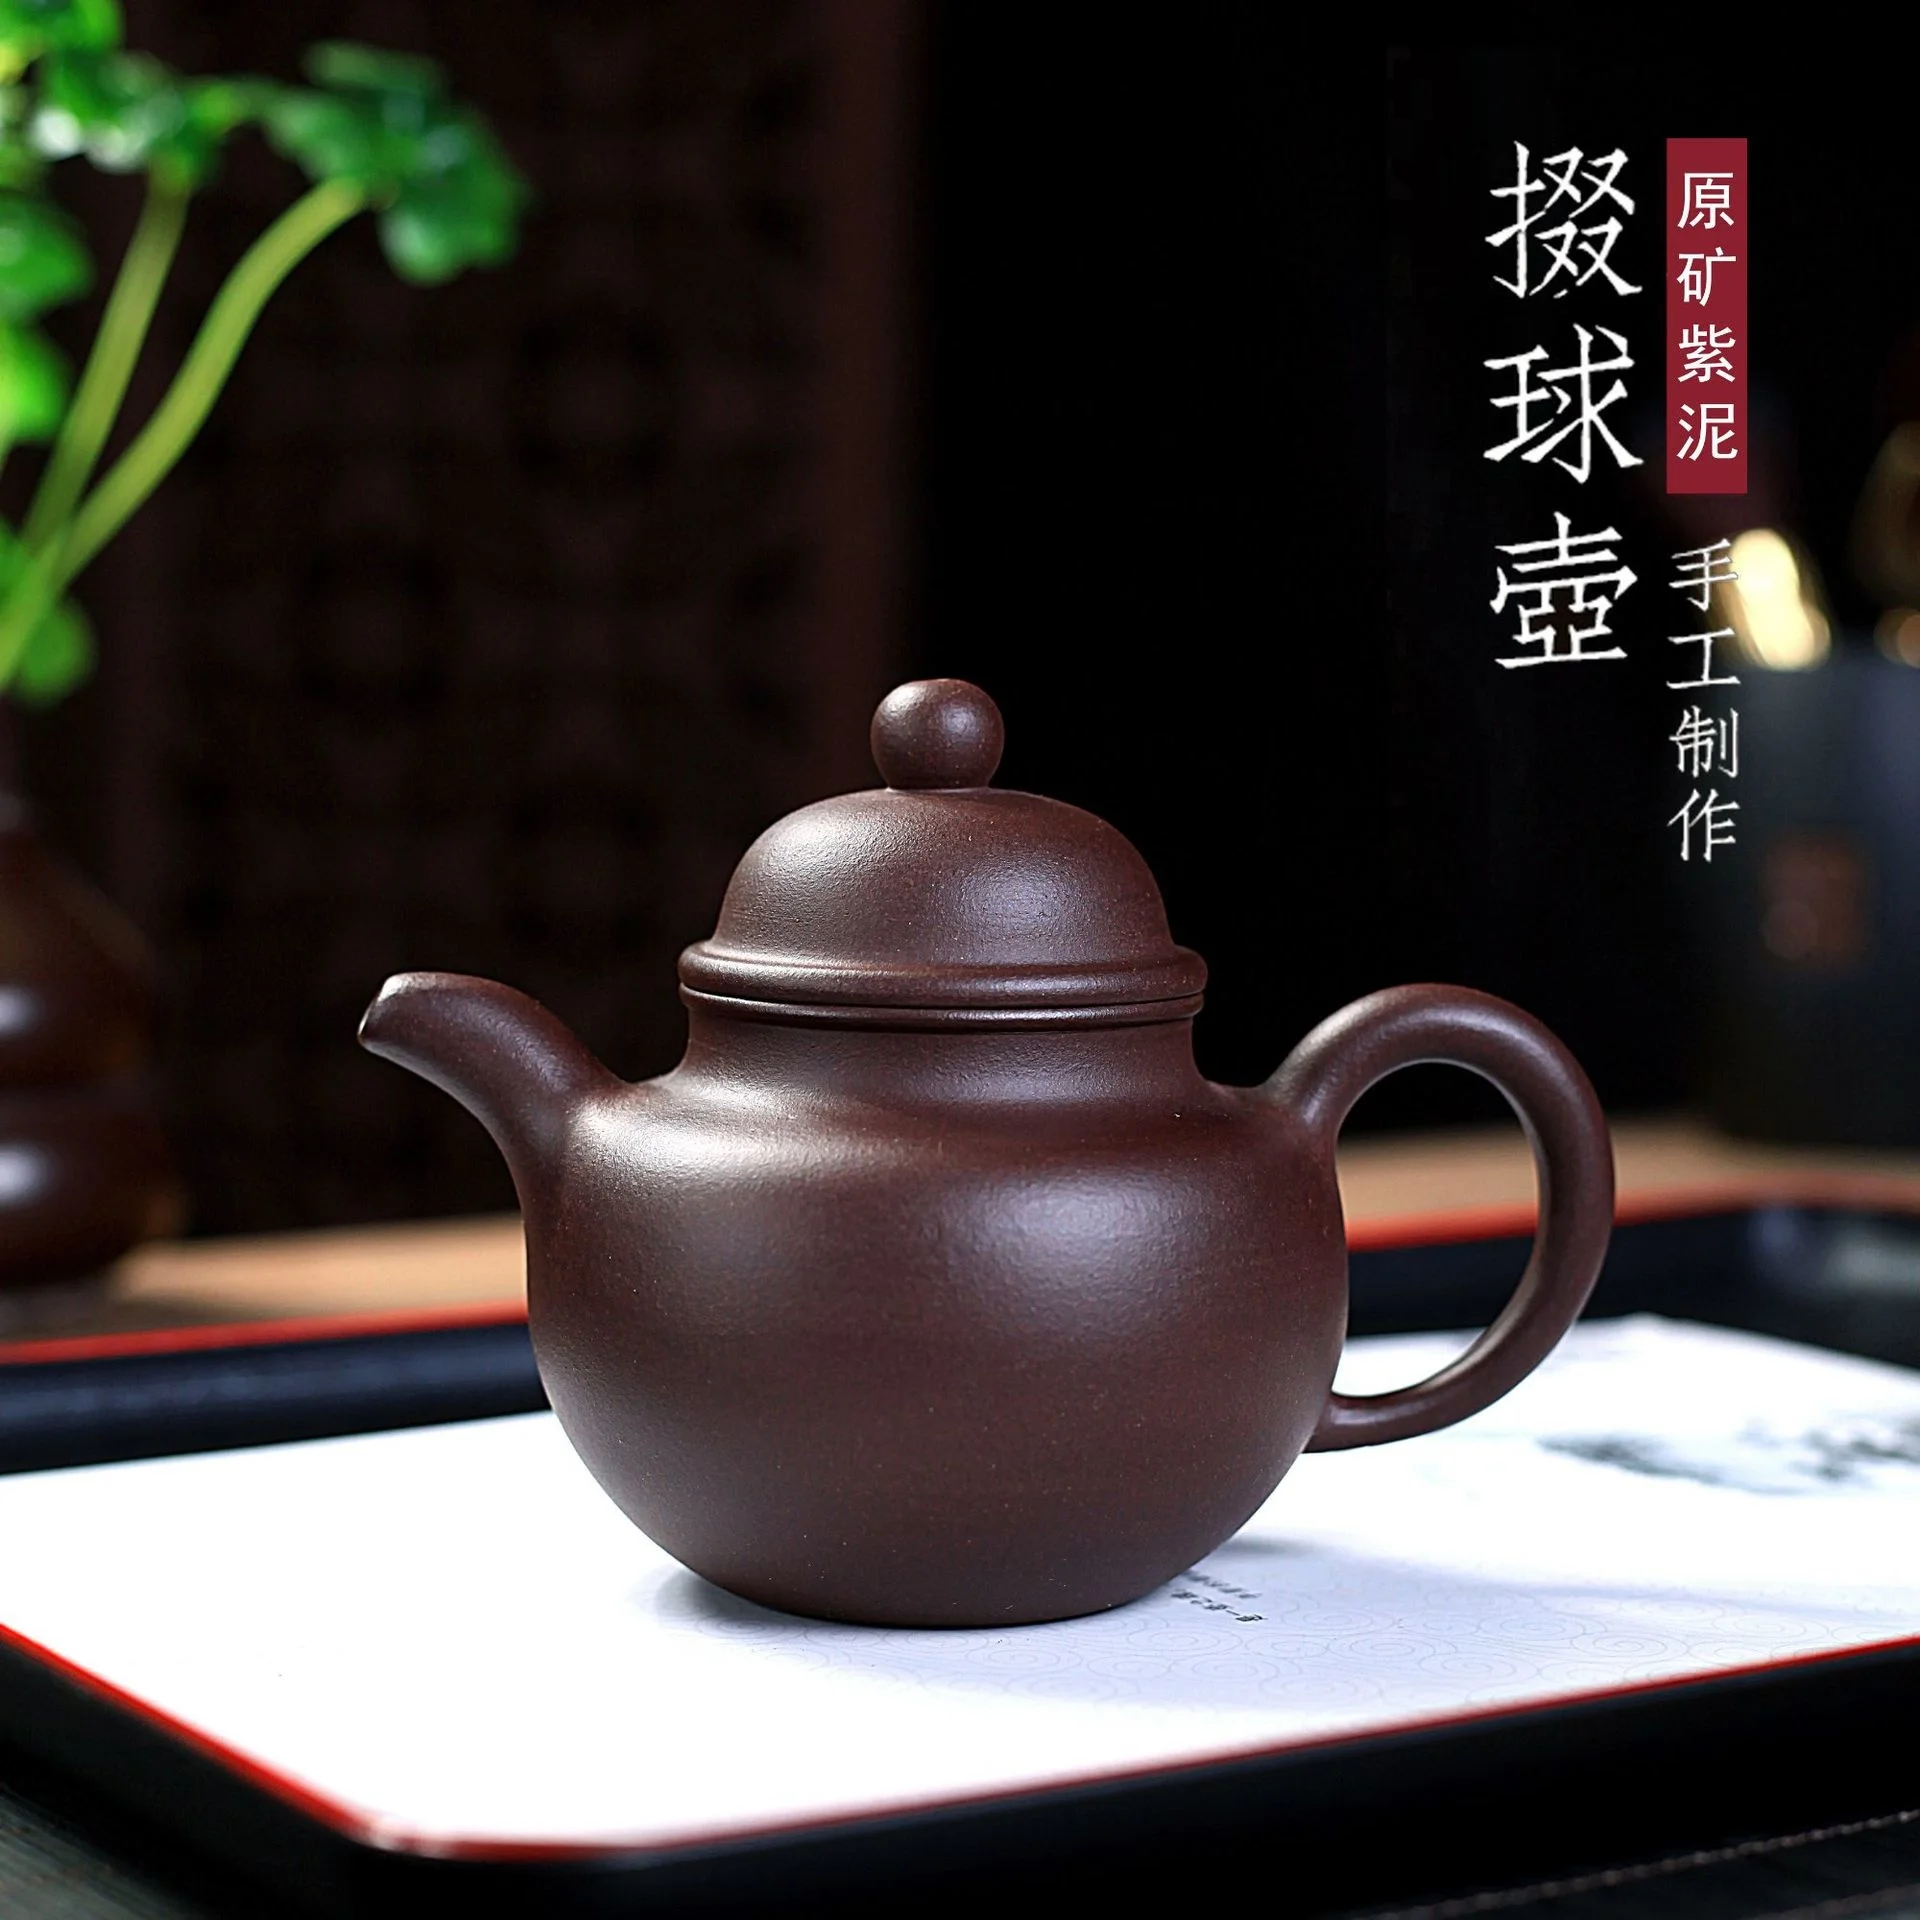 

Yixing фиолетовый глиняный горшок, сырая руда, известный чистый ручной набор для приготовления чая кунг-фу, домашний чайный набор, старый фиоле...